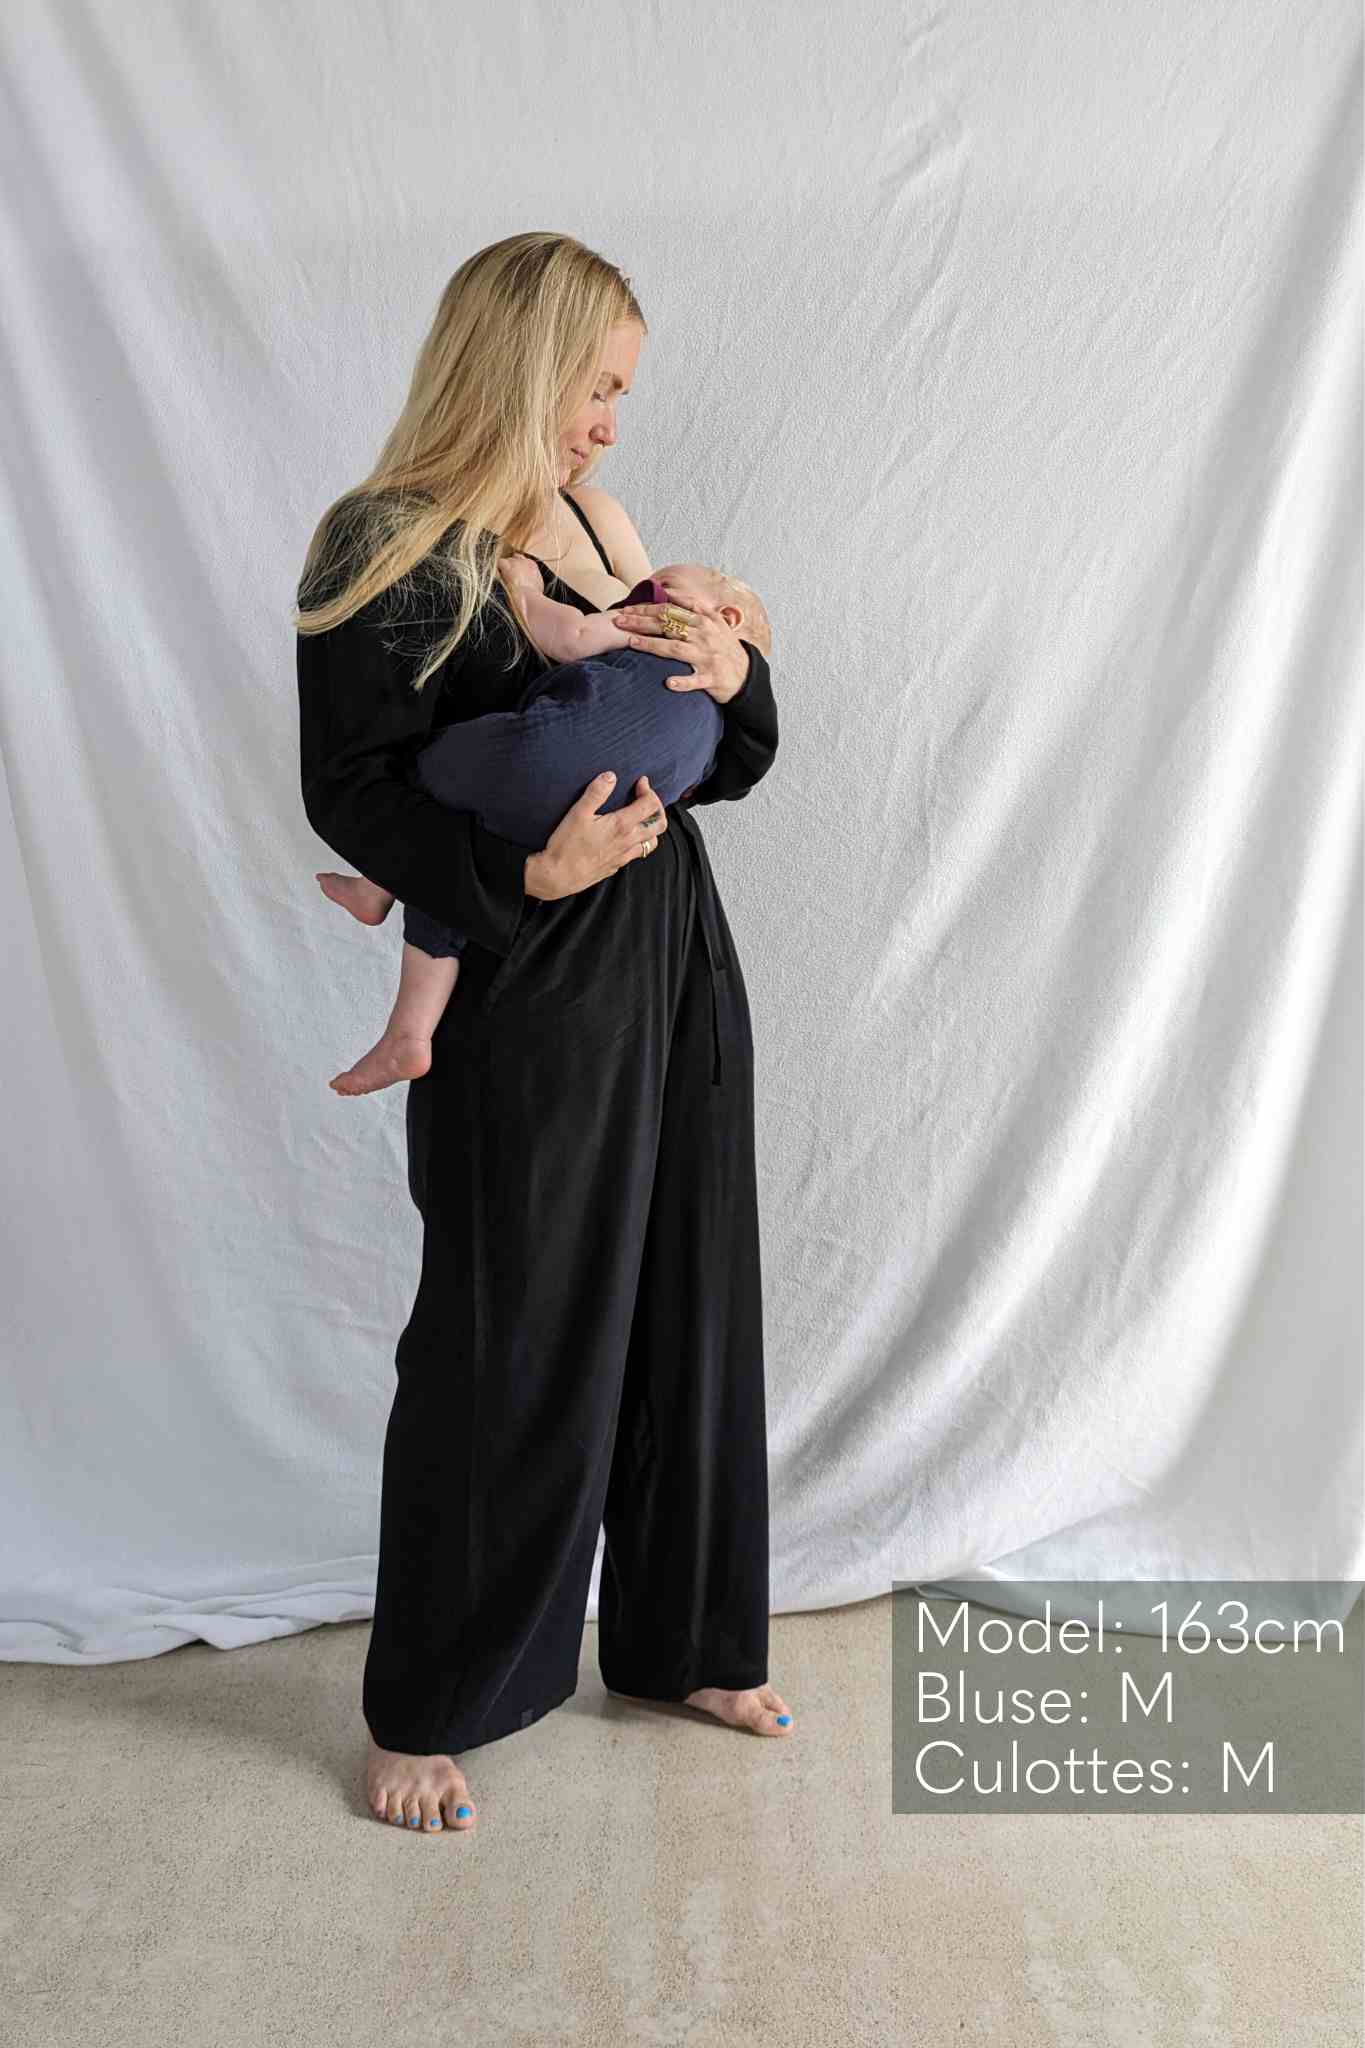 Femme en chemisier noir portant un bébé dans les bras.